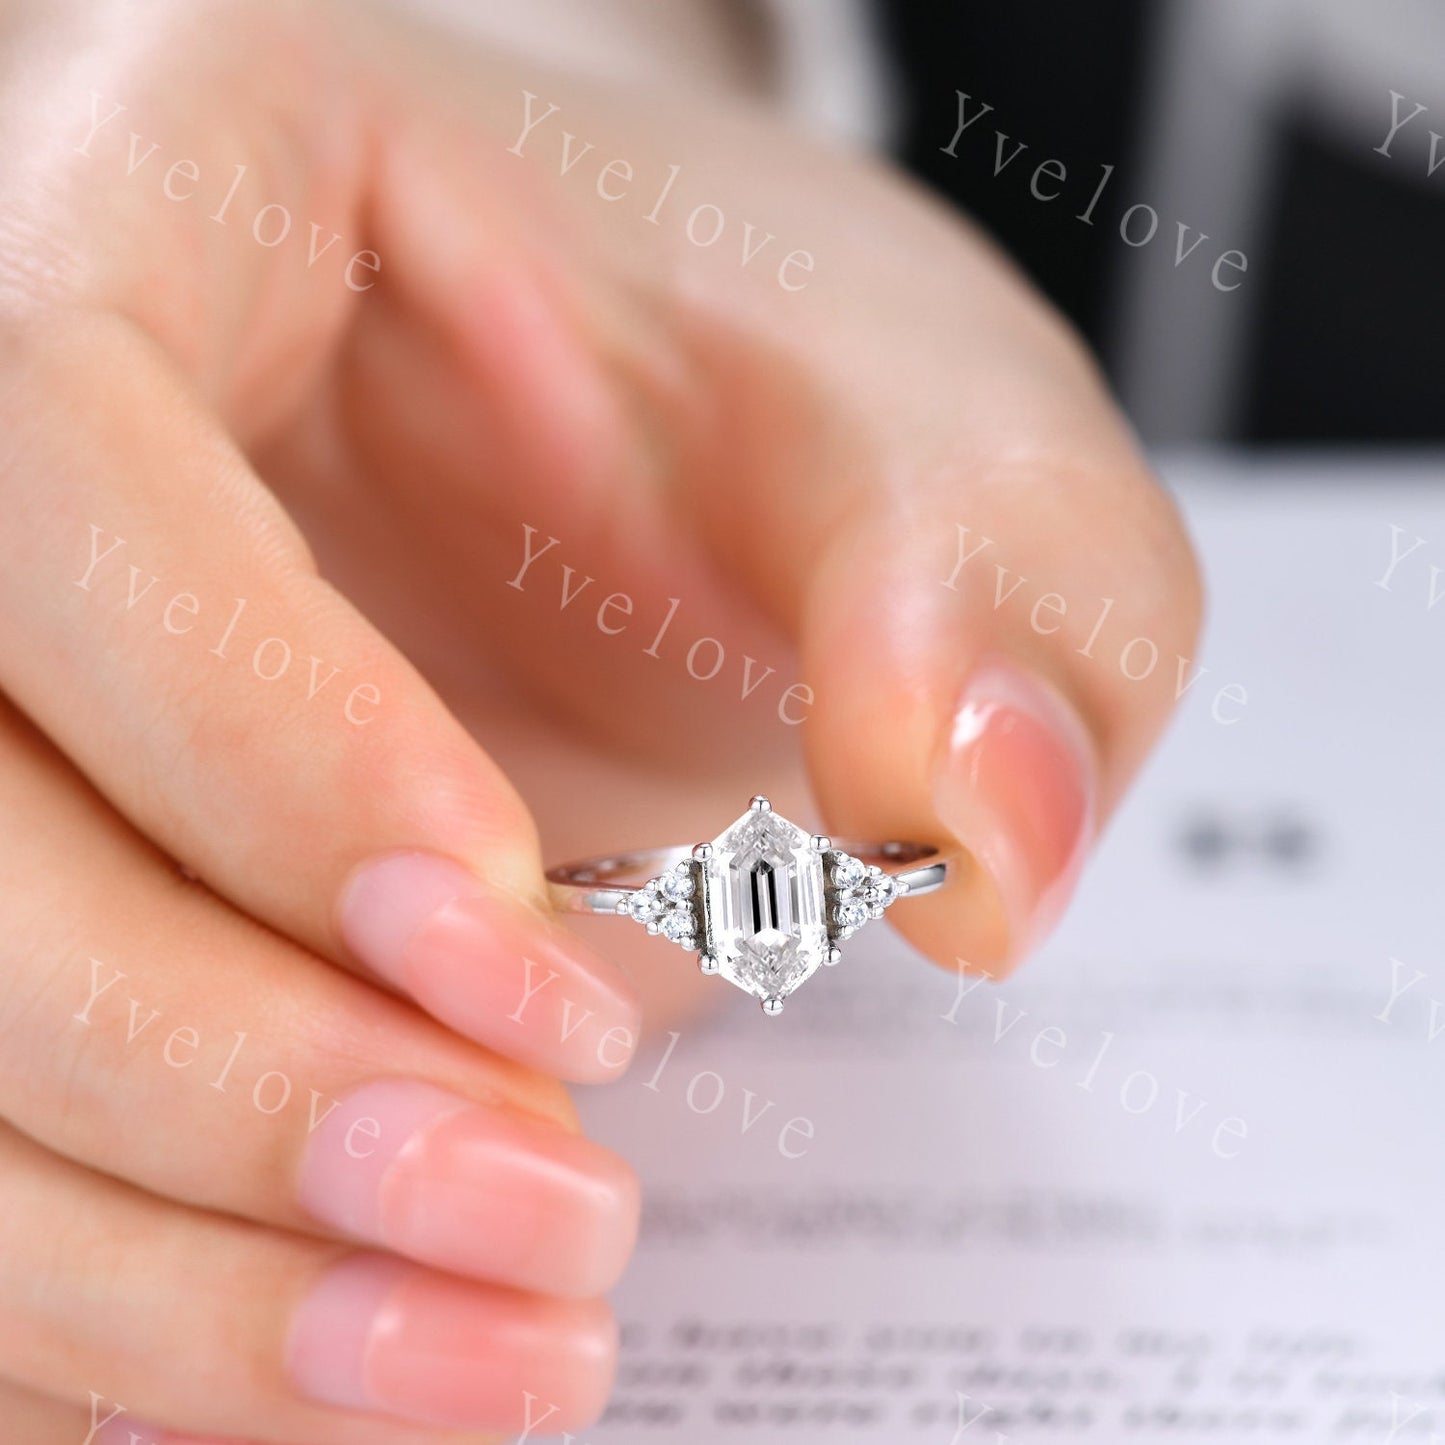 Retro hexagon Moissanite Ring,Vintage Moissanite Ring Set,Unique Diamond Engagement Ring,Promise Ring,Anniversary Ring Gift For Her,Platinum